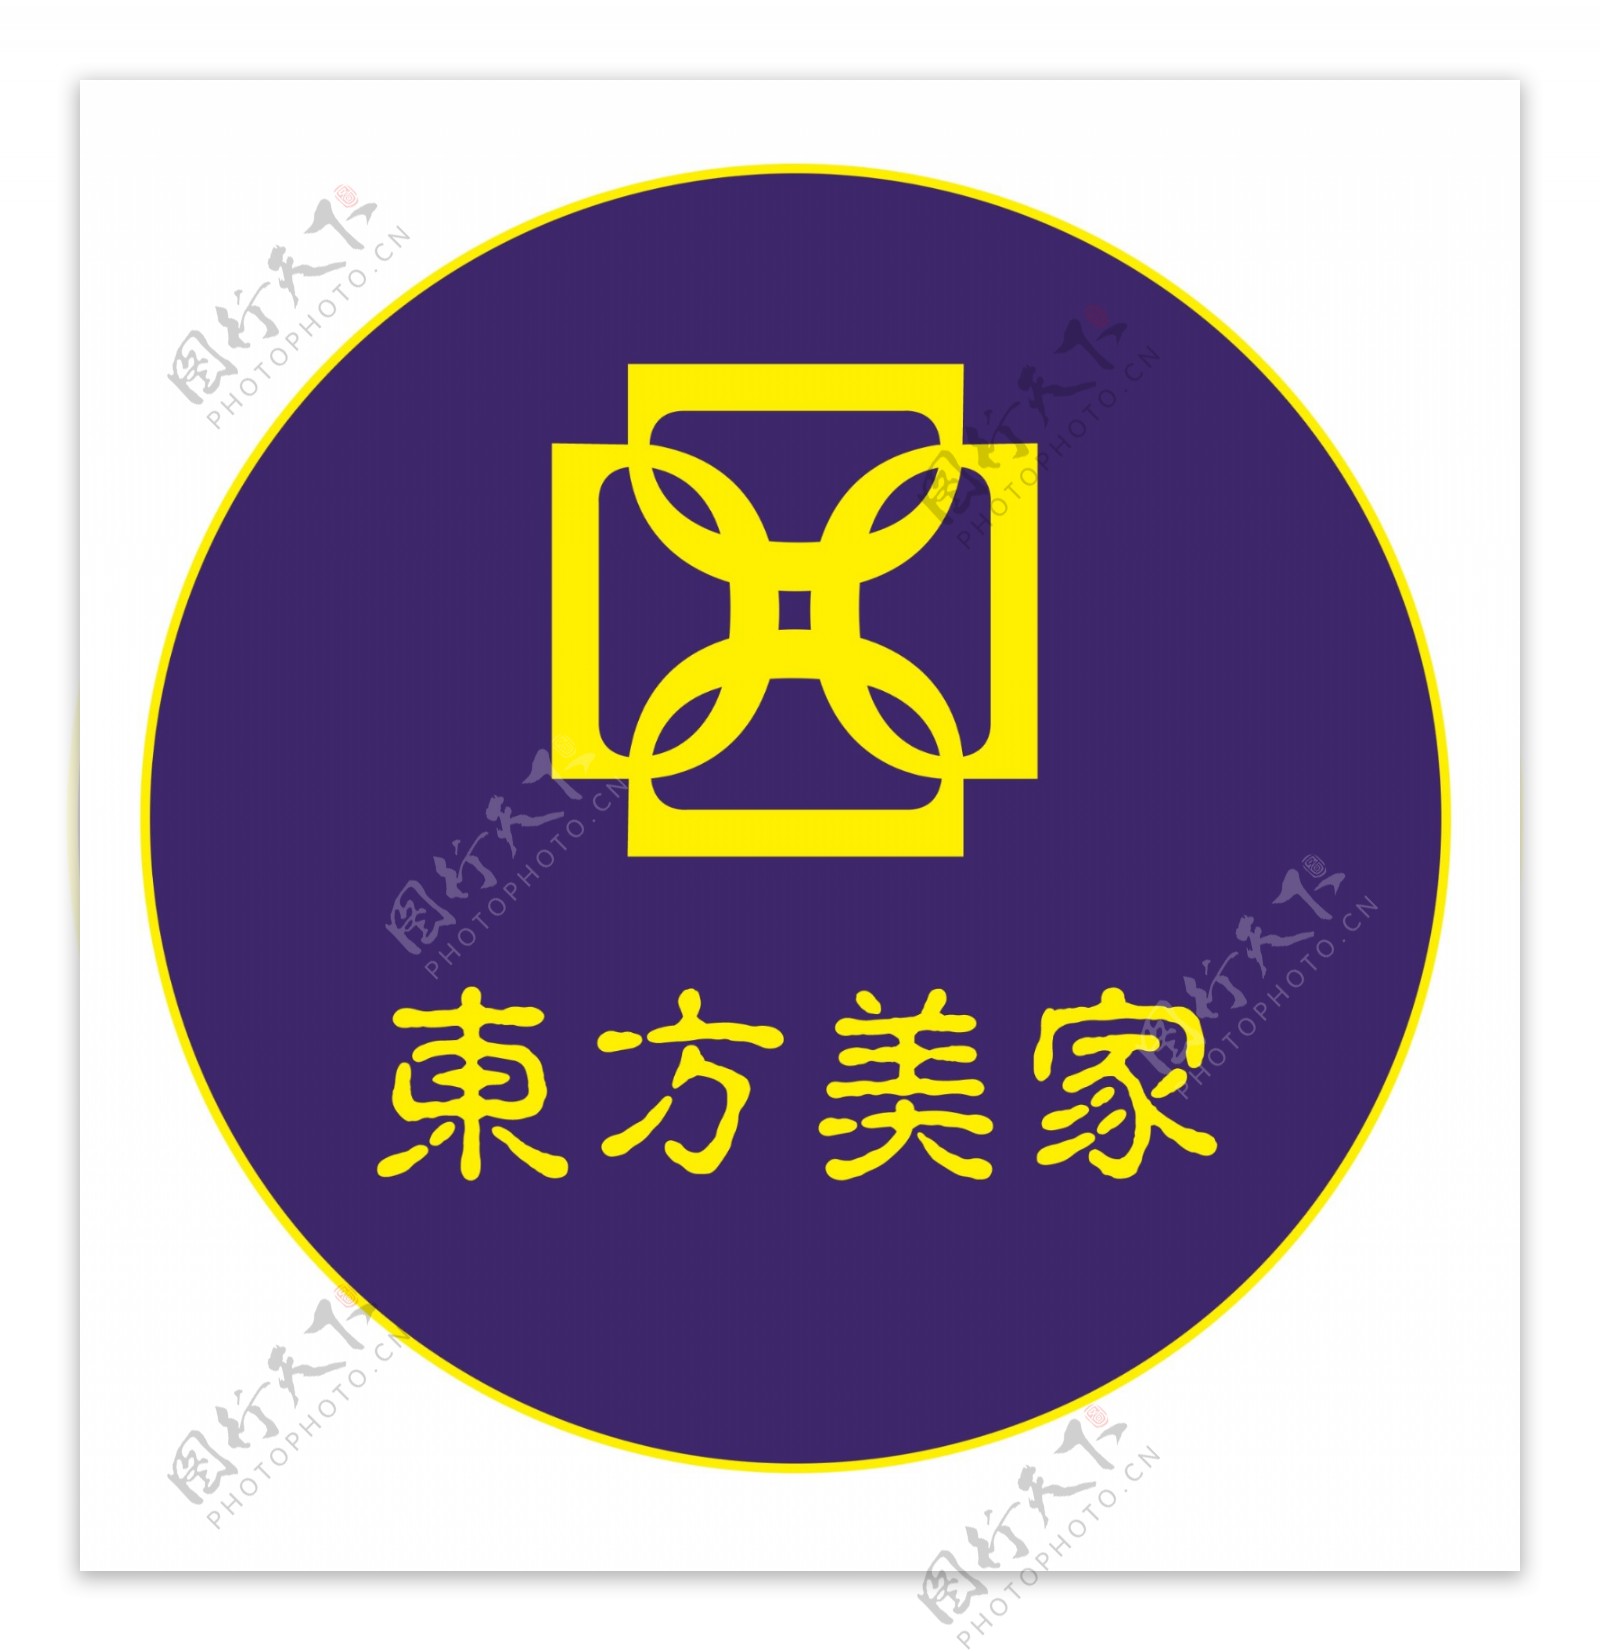 东方美家logo图片